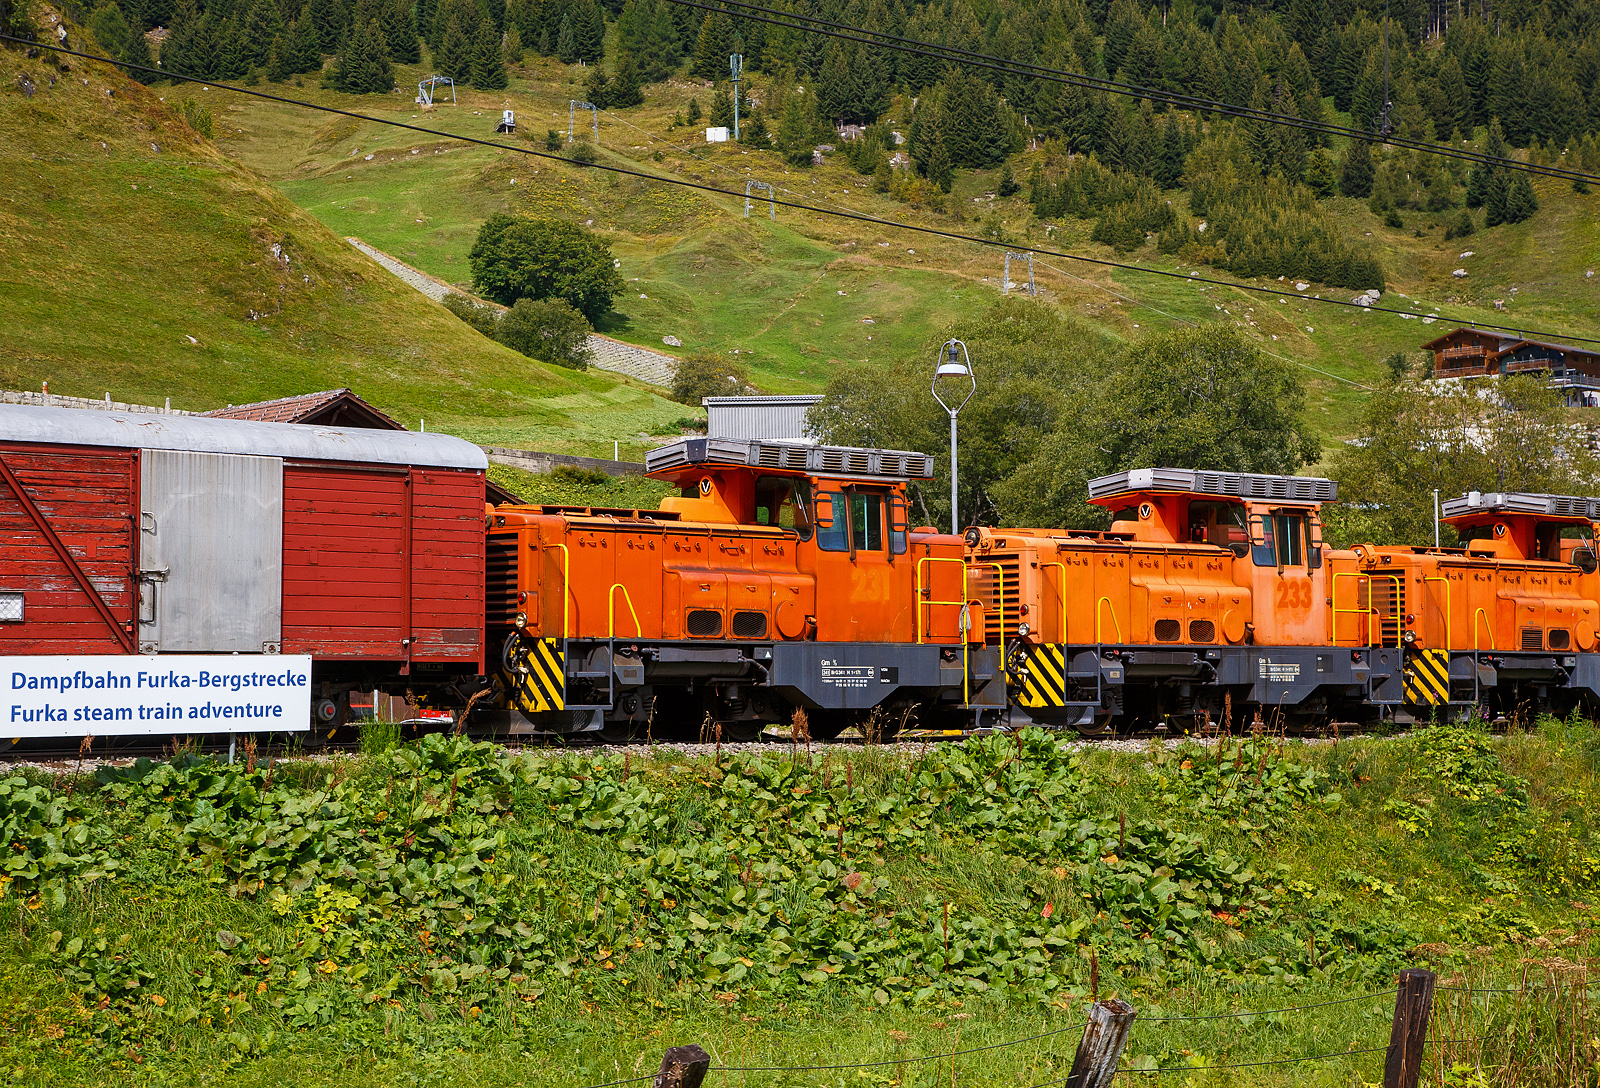 Alle drei ehemaligen dieselelektrische Rangierlokomotive der Rhätischen Bahn - RhB Gm 3/3 – 231bis 233 sind nun bei der - DFB Dampfbahn Furka-Bergstrecke AG. Hier stehen sie aufgereiht noch in der originalen RhB-Lackierung am 07 September 2021 in Realp (Uri) bei der DFB Dampfbahn Furka-Bergstrecke AG, aufgenommen aus einem fahrenden MGB-Zug heraus.

Die Gm 3/3 ist eine dreiachsige dieselelektrische Rangierlokomotive ehemals der Rhätischen Bahn (RhB). Die drei Maschinen mit den Betriebsnummern 231 bis 233 wurden zwischen 1975 und 1976 in Betrieb genommen.

Gemäß der ursprünglichen Idee sollte der Hersteller, die französische Firma Moyse /Locotracteurs Gaston Moyse), die meisten Baugruppen aus der Serienproduktion eines französischen Loktyps übernehmen. Die vielen Sonderwünsche der RhB – MTU-Dieselmotor, Vakuumbremse, Vielfachsteuerung, Führerstandseinrichtung nach RhB-Norm, erzwangen jedoch umfangreiche Änderungen und verzögerten die Lieferung der Anfang 1974 bestellten Fahrzeuge erheblich. Typenbezeichnung Moyse ist Type CF 33 EPA 500 MTL, die RhB 231 wurde 1975 unter der Fabriknummer 3553 gebaut, 1976 folgten die RhB 232 unter der Fabriknummer 3554 und die RhB 232 unter der Fabriknummer 3555.

Die Stundenleistung der maximal 55 km/h schnellen und 34 t schweren Lokomotiven beträgt 220 kW am Rad. Der Antrieb erfolgt durch einen MTU V 6-Zylinder-Dieselmotor (MTU 6 V 331 TC10) mit 386 kW (525 PS) Leistung, dieser treibt den Hauptgenerator an, welcher den elektrischen Gleichstrom-Fahrmotor elektrischen. Das Drehmoment wird vom Fahrmotor auf das nachgeschaltete Getriebe übertragen, hier kann zwischen Rangier- und Streckengang gewechselt werden. Die 3 Radsätze werden mittels Kardanwellen vom Getriebe auf die Achsgetriebe angetrieben.

Haupteinsatzgebiet dieser diesel-elektrischen Adhäsionslokomotiven bei der RhB war der Rangierdienst in Landquart, Chur und Untervaz. Dank ihrer hohen Anfahrzugkraft (im Rangiergang 153 kN) und der möglichen Doppeltraktion eigneten sich die robusten Fahrzeuge auch für den schweren Bauzugdienst. Schneeräumfahrten, gemeinsam mit der kleinen Schneeschleuder Xrotm 9216 oder der großen Xrotmt 9217, gehörten ebenfalls zum Einsatzprogramm bei der RhB. Ab Herbst 2020 wurden die drei Loks nur noch als Reserve vorgehalten, im Februar 2021 wurden sie aus dem Betrieb genommen und stillgelegt. Mitte April 2021 wurden alle drei Lokomotiven dann an die Dampfbahn Furka Bergstrecke verkauft.

Bei der DFB:
Für den schweren Rangierdienst in Realp sowie für Baulogistikfahrten im Furka-Scheiteltunnel ist die DFB auf eine leistungsfähige und zuverlässige Adhäsions-Diesellok angewiesen. Bis dahin wurde dafür die von Jung gebaute Gm 4/4 71  Elch  eingesetzt. Seit der Übernahme dieser Lok von der Matterhorn Gotthard Bahn (MGB) im Jahr 2014 hat dieses Fahrzeug den ordnungsgemäßen Unterhalt erfahren. Im Winter 2021/2022 wurde jedoch an dieser inzwischen 55-jährigen Lok eine aufwendige Totalrevision nötig.

Gleichzeitig wurde bekannt, dass die Rhätische Bahn (RhB) ihre drei Gm 3/3 231 bis 233  Moyse  durch Neufahrzeuge ersetzt, so wurde seitens der DFB Ende 2018 das Interesse an diesen Lokomotiven bekundet. Anlässlich der Verhandlungen im ersten Quartal 2021 wurden der DFB AG zwei Lokomotiven zugesagt. Als der dritten Lok die Verschrottung drohte, ergab sich für die DFB die Gelegenheit, auch diese zwecks erweiterter Ersatzteilhaltung zu übernehmen. Die Überführung (ob aus eigener Kraft ist mir unklar) der drei Gm 3/3 durch die RhB von Landquart nach Disentis/Mustér erfolgt am frühen Morgen des 12. April 2021. Am Tag darauf wurden die drei  Moyse  einzeln durch die MGB, jeweils in einen MGB-Personenzug direkt hinter einer HGe 4/4 II (gemischte  Zahnrad- und Adhäsionslokomotive) eingestellt. Die RhB Gm 3/3sind ja reine Adhäsionsloks, zwischen Disentis und Andermatt bzw. Realp gibt es ja Zahnstangeabschnitte mit bis zu 120 ‰ Neigung.

Danach ging die Dieselcrew der DFB an die Bereitstellung der ersten Gm 3/3. Am 28. Dezember 2021 konnte die Gm 231 für den Betrieb freigegeben werden. An diesem Tag und an den beiden nachfolgenden Tagen wurden theoretische und praktische Fahrzeugschulungen durchgeführt. Aktuell sind acht Lokführer auf den Gm 3/3 instruiert, weitere Schulungen werden folgen.

Danach galt es, Erfahrungen im Schneeräumeinsatz im Bahnhof Realp mit der Xrotm 9216  Schleuderina  zu sammeln. Die Gm 231 kommt außerdem für schwere Rangiermanöver zum Einsatz. Inzwischen hatten auch die Arbeiten zur Wiederinbetriebnahme der Gm 233 begonnen. Mit zwei betriebsbereiten Loks wird die Dieselcrew die Traktionsbedürfnisse auf den Adhäsionsabschnitten ohne Zahnstange flexibel abdecken können. Die Gm 232 bleibt bis auf weiteres außer Betrieb.

Status der Gm 3/3: 
Lok 231 und 233: in Betrieb
Lok 232 abgestellt (Reserve/Ersatzteilspender) 
Die UIC-Fahrzeugnummern sind 90 85 822 0231-7, 0232-5 und 0233-3.

TECHNISCHE DATEN:
Spurweite: 	1.000 mm (Meterspur)
Achsformel: C
Länge über Puffer: 7.960 mm
Achsabstände: 1.935 mm / 2.265 mm = 4.200 mm
Breite: 2.700 mm
Höhe: 3.560 mm
Dienstgewicht: 34 t
Höchstgeschwindigkeit:  55 km/h (35 km/h im Rangiergang)
Dauerleistung Dieselmotor: 386 kW (525 PS), 
Motordrehzahl: max. 2.000 U/min
Dauerleistung am Rad: 220 kW (300 PS)
Anfahrzugkraft: 153 kN (Rangiergang) / 61 kN (Streckengang)
Stundenzugkraft: 83.4 kN (Rangiergang) / 34.3 kN (Streckengang)
Treibraddurchmesser: 	920 mm (neu)
Motor: MTU V 6-Zylinder-Dieselmotor vom Typ 6V 33 1 TC10 
Antrieb: Dieselelektrisch (Drehmomentübertagung siehe Text)
Anhängelast:  35-500 t im Streckengang je nach Neigung (nur Adhäsion)
Bremssysteme: Handbremse, direkte Druckluftbremse (Rangierbremse), druckluftgesteuerte Vakuumbremse (automatische Bremse), elektrische Bremse (Widerstandsbremse)
Sicherheitssysteme: Sicherheitssteuerung (Totmann und Wachsamkeit), Zugsicherung ZSI 90, Geschwindigkeitsmesser mit Fahrtenschreiber (Farbscheibe)

Quellen: DFB Dampfbahn Furka-Bergstrecke AG, bahnonline.ch/, de.wikipedia.org/ und hellertal.startbilder.de
